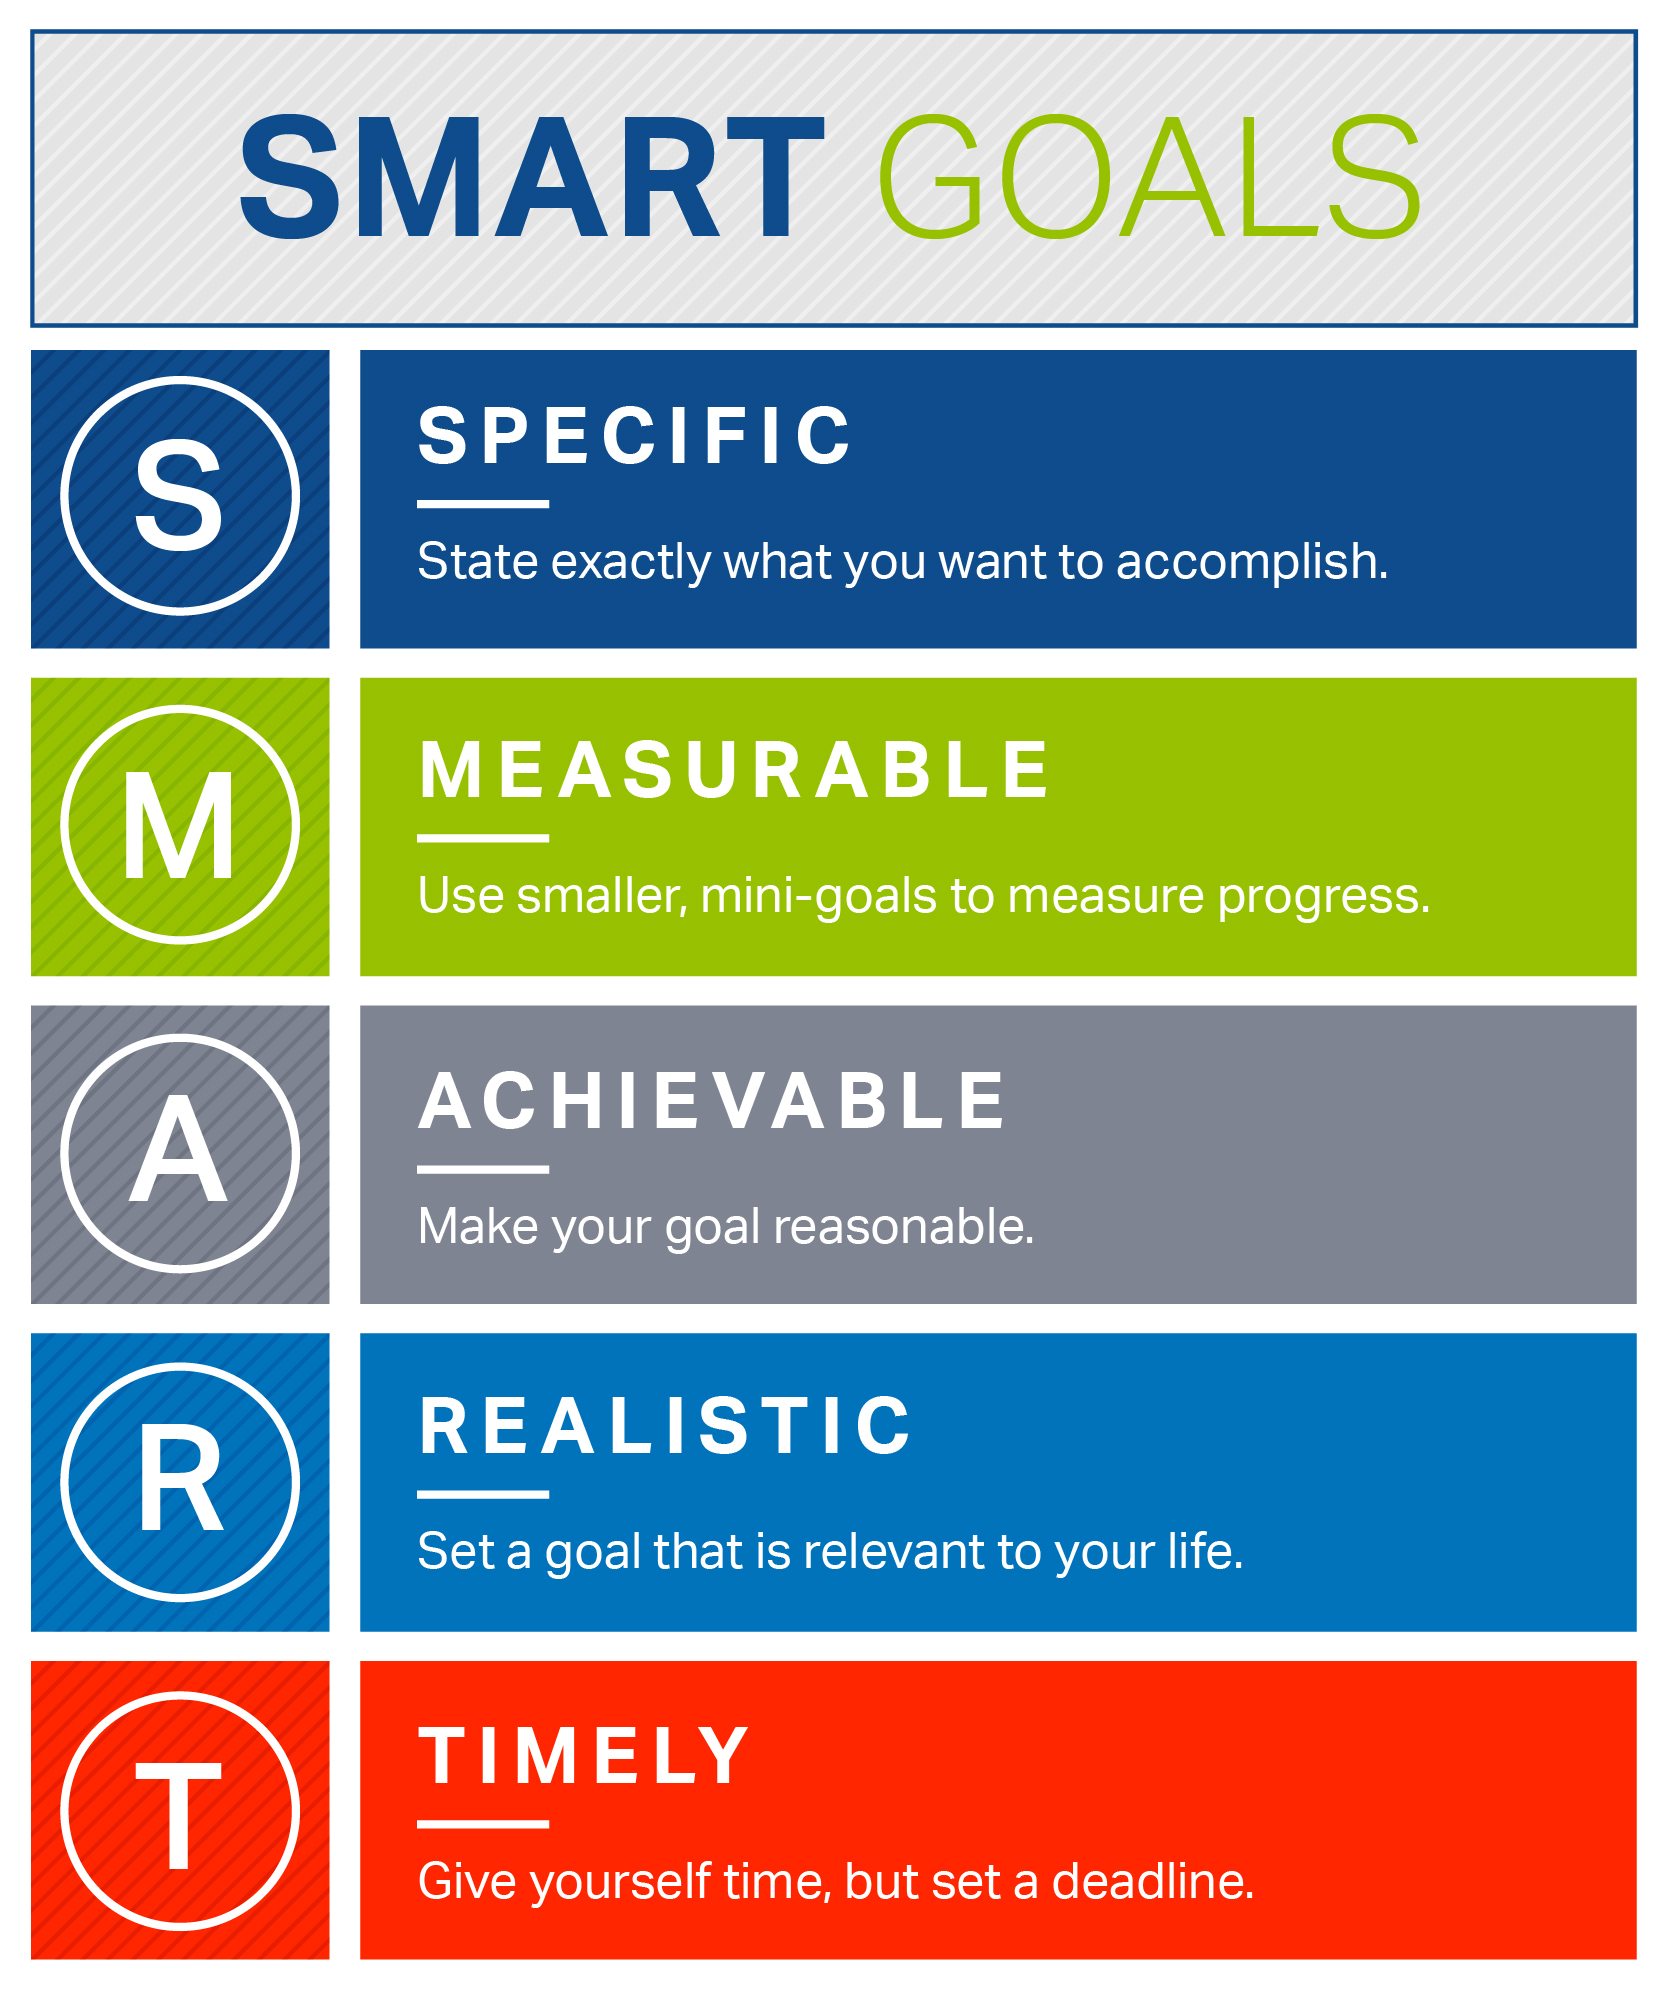 How to set smart goals